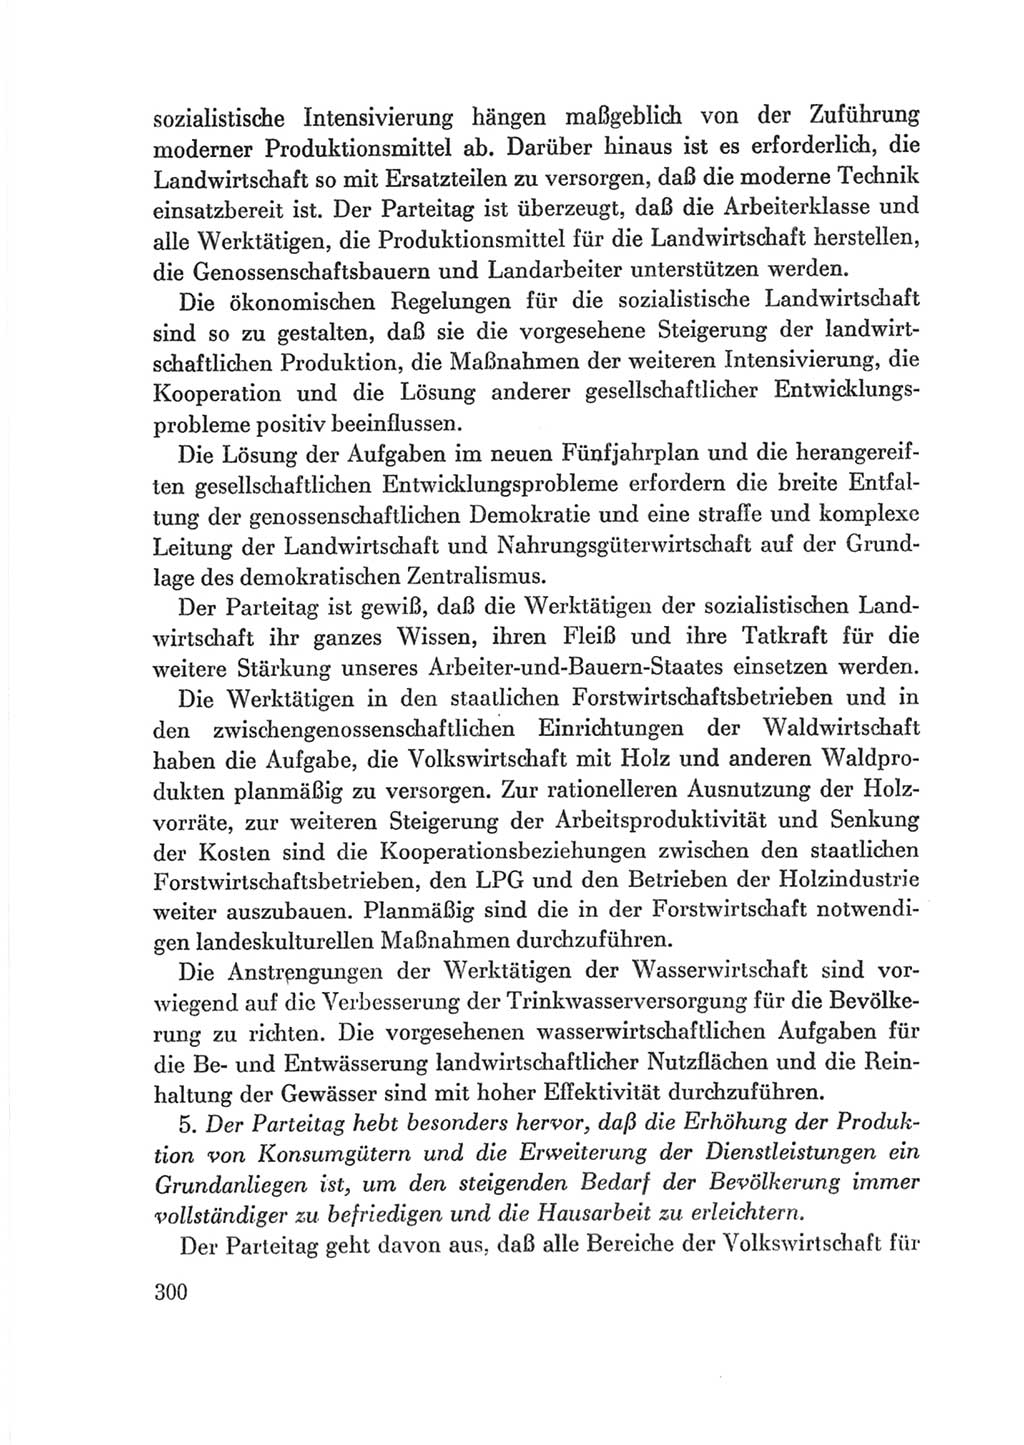 Protokoll der Verhandlungen des Ⅷ. Parteitages der Sozialistischen Einheitspartei Deutschlands (SED) [Deutsche Demokratische Republik (DDR)] 1971, Band 2, Seite 300 (Prot. Verh. Ⅷ. PT SED DDR 1971, Bd. 2, S. 300)